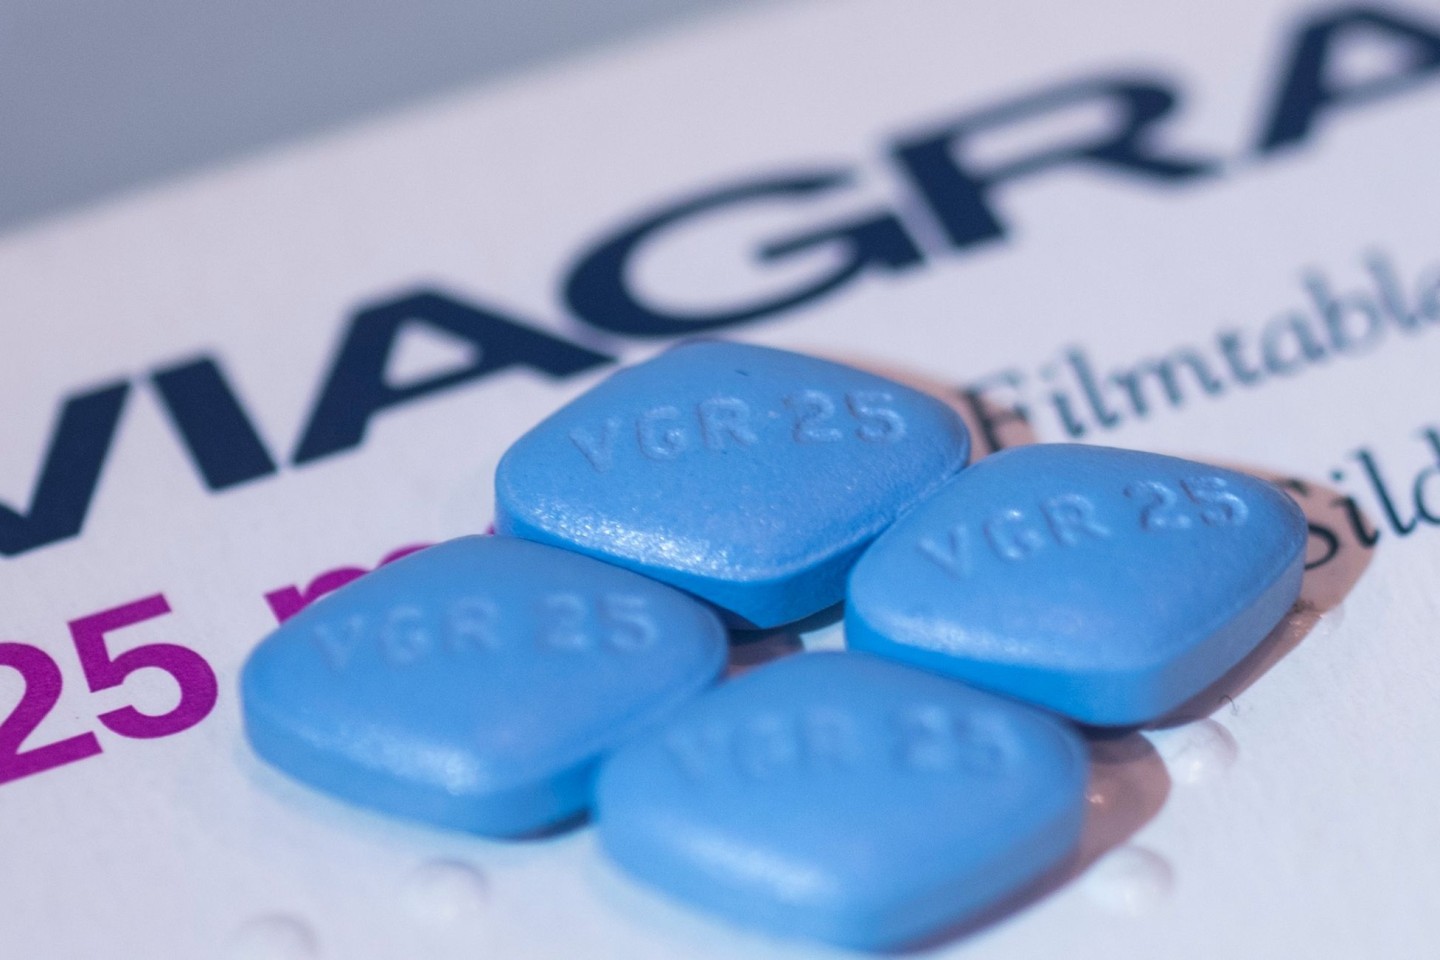 Viagra Potenzmittel - Original und Fake erkennen!